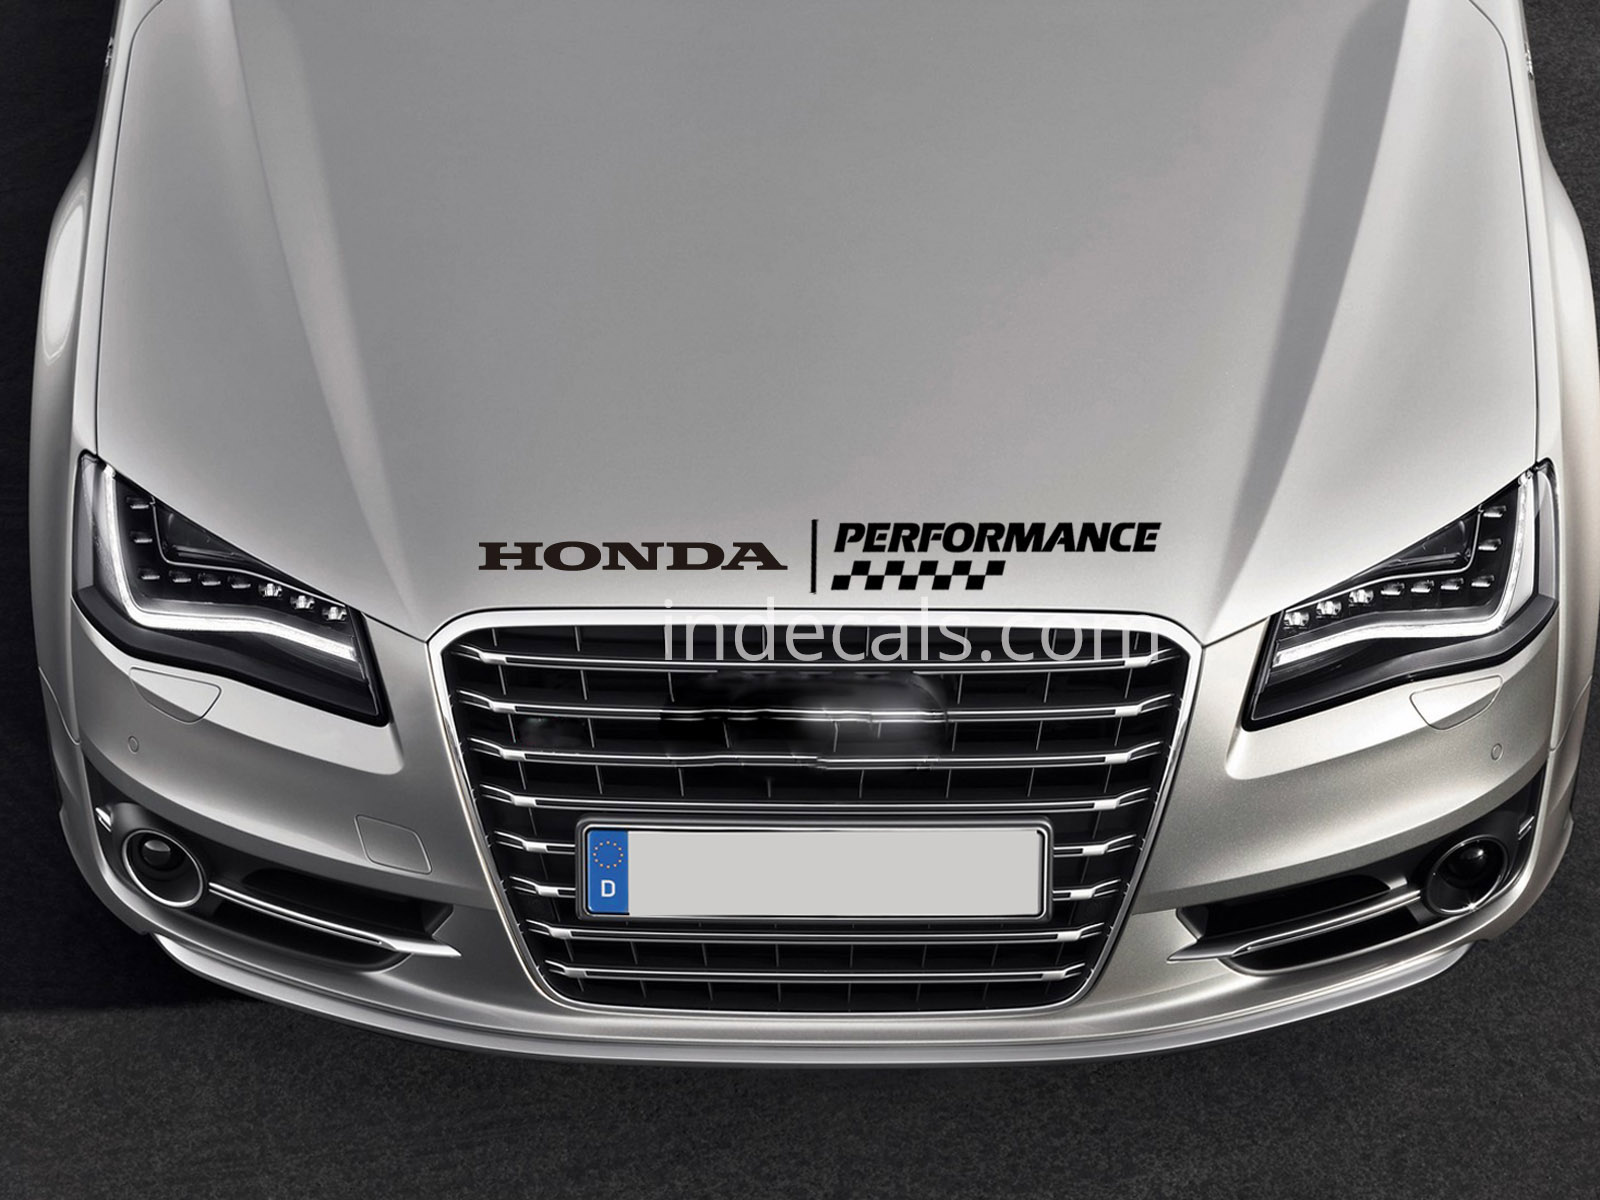 1 x Honda Performance Sticker for Bonnet - Black